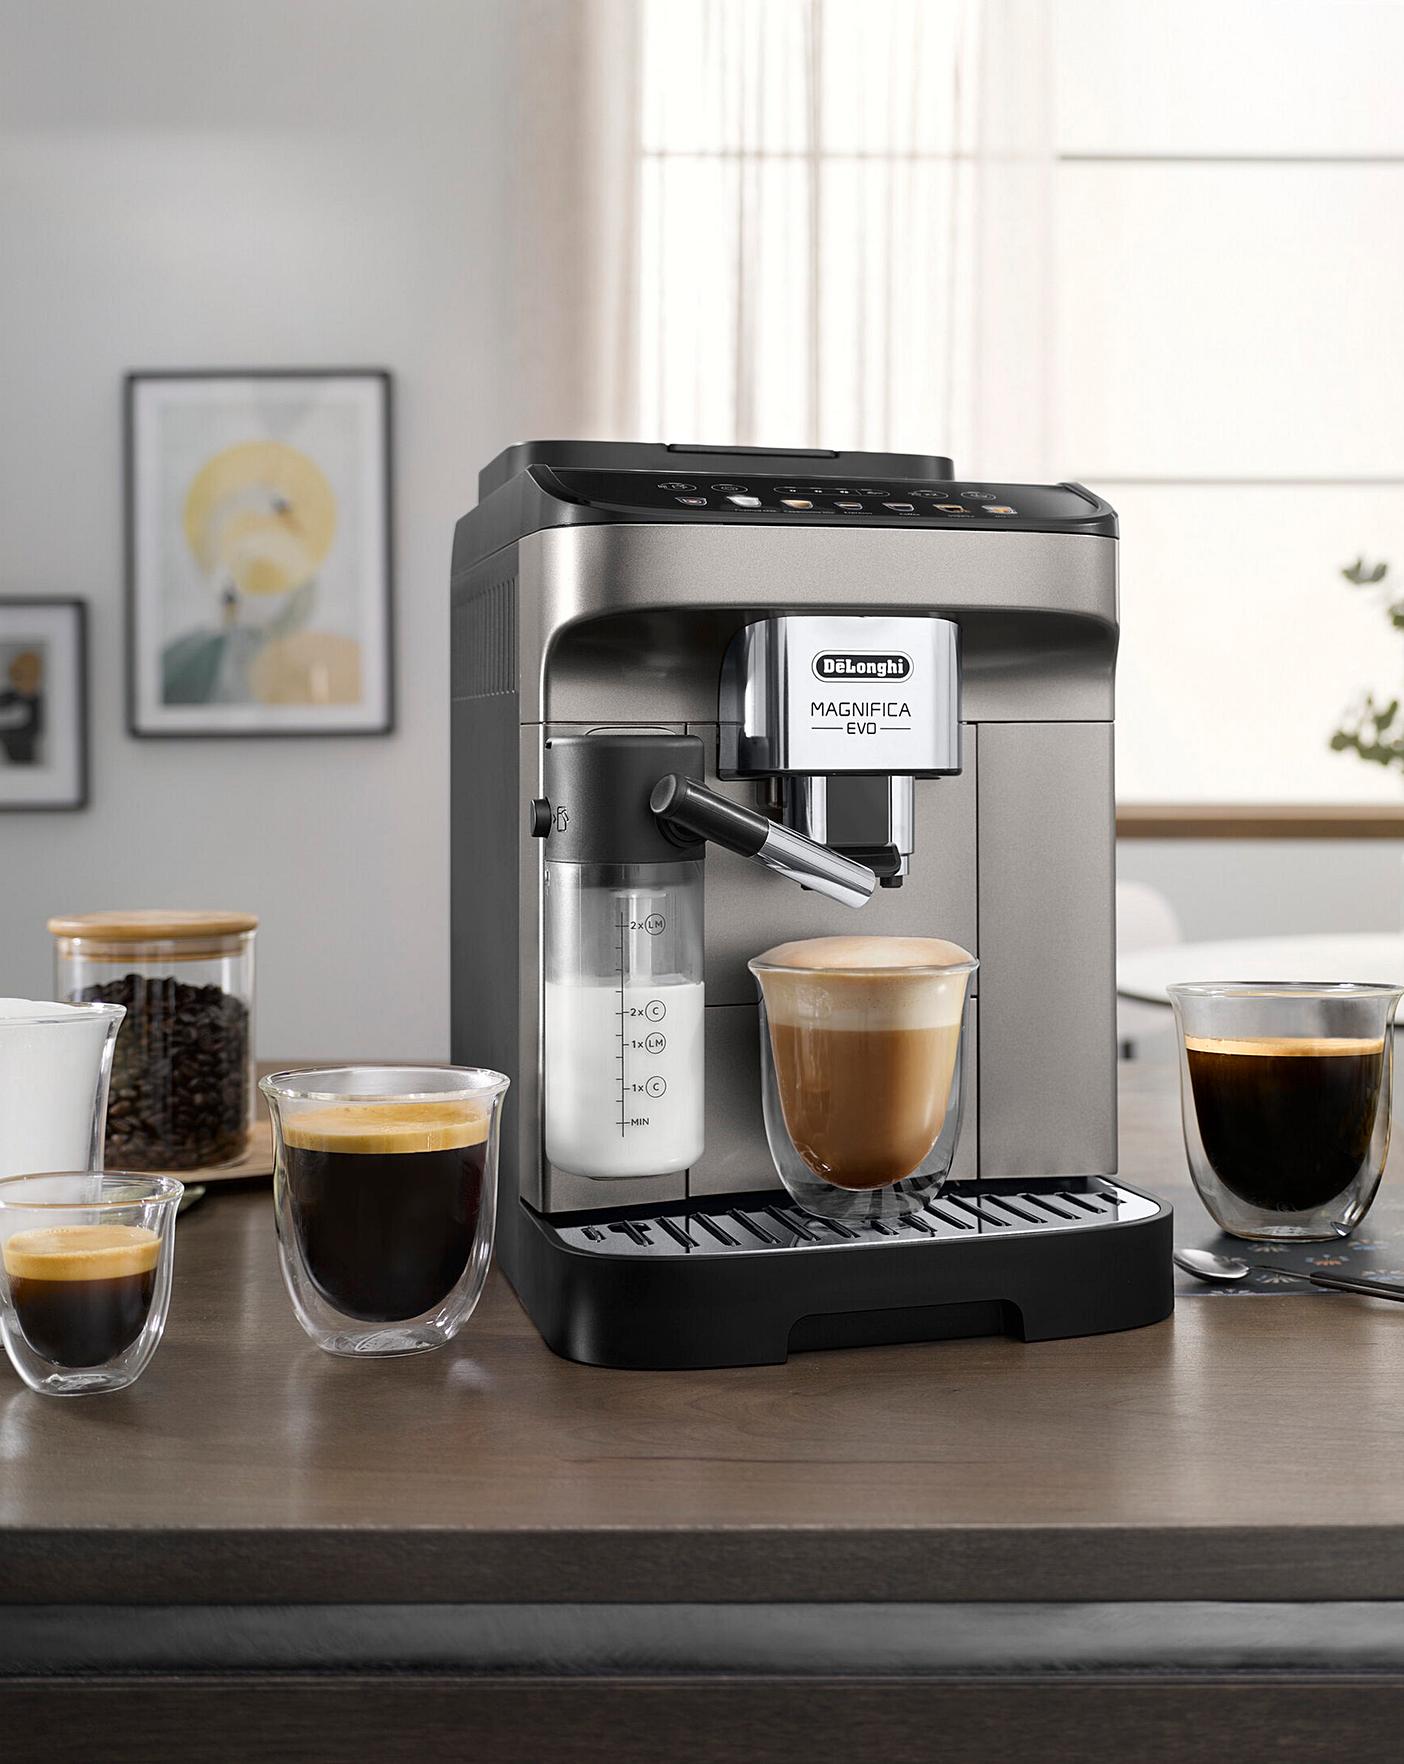 Magnifica Evo Espresso Machine